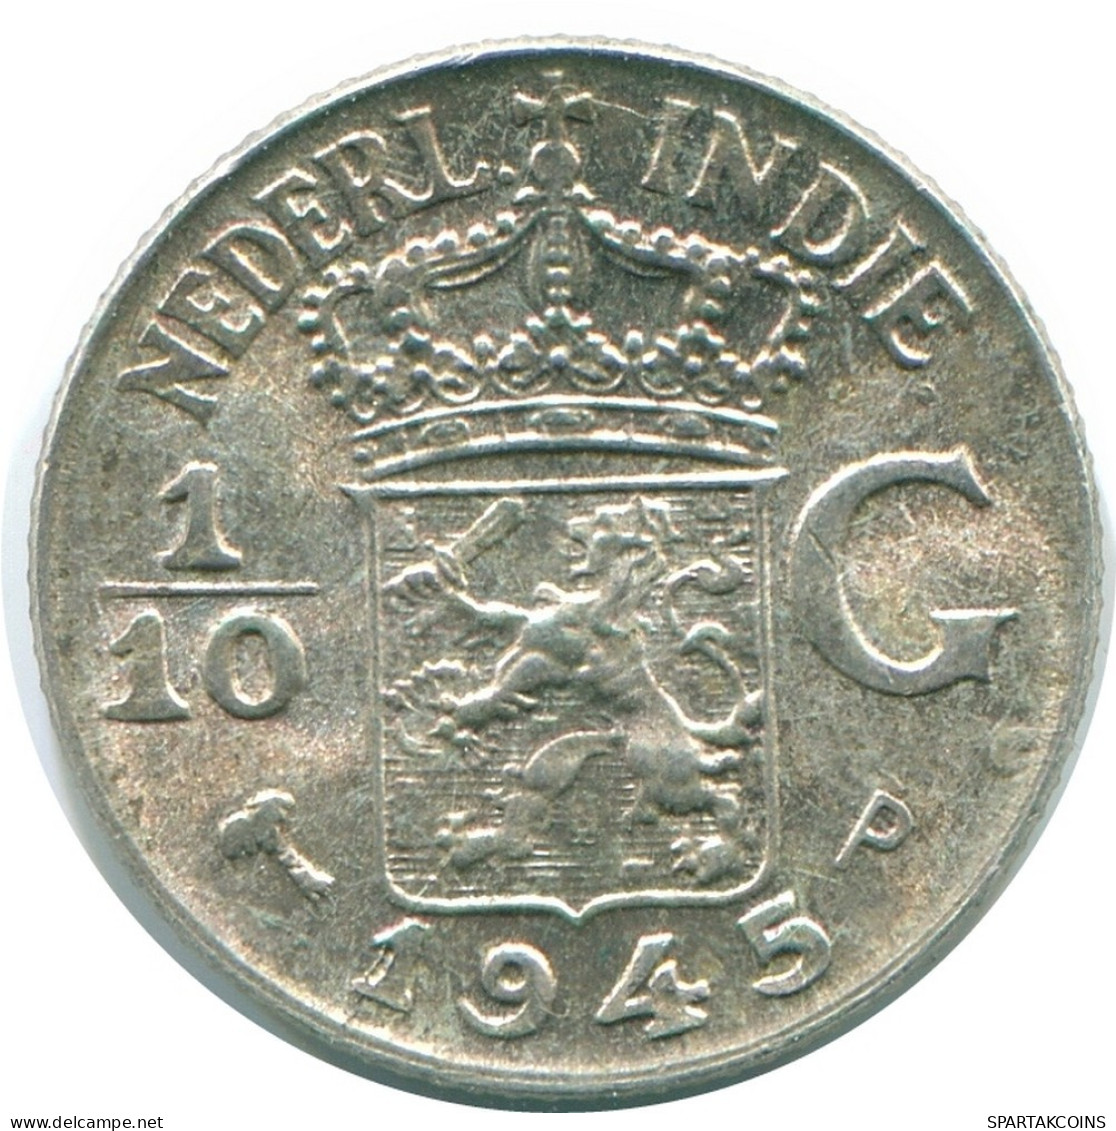 1/10 GULDEN 1945 P NETHERLANDS EAST INDIES SILVER Colonial Coin #NL14106.3.U.A - Niederländisch-Indien